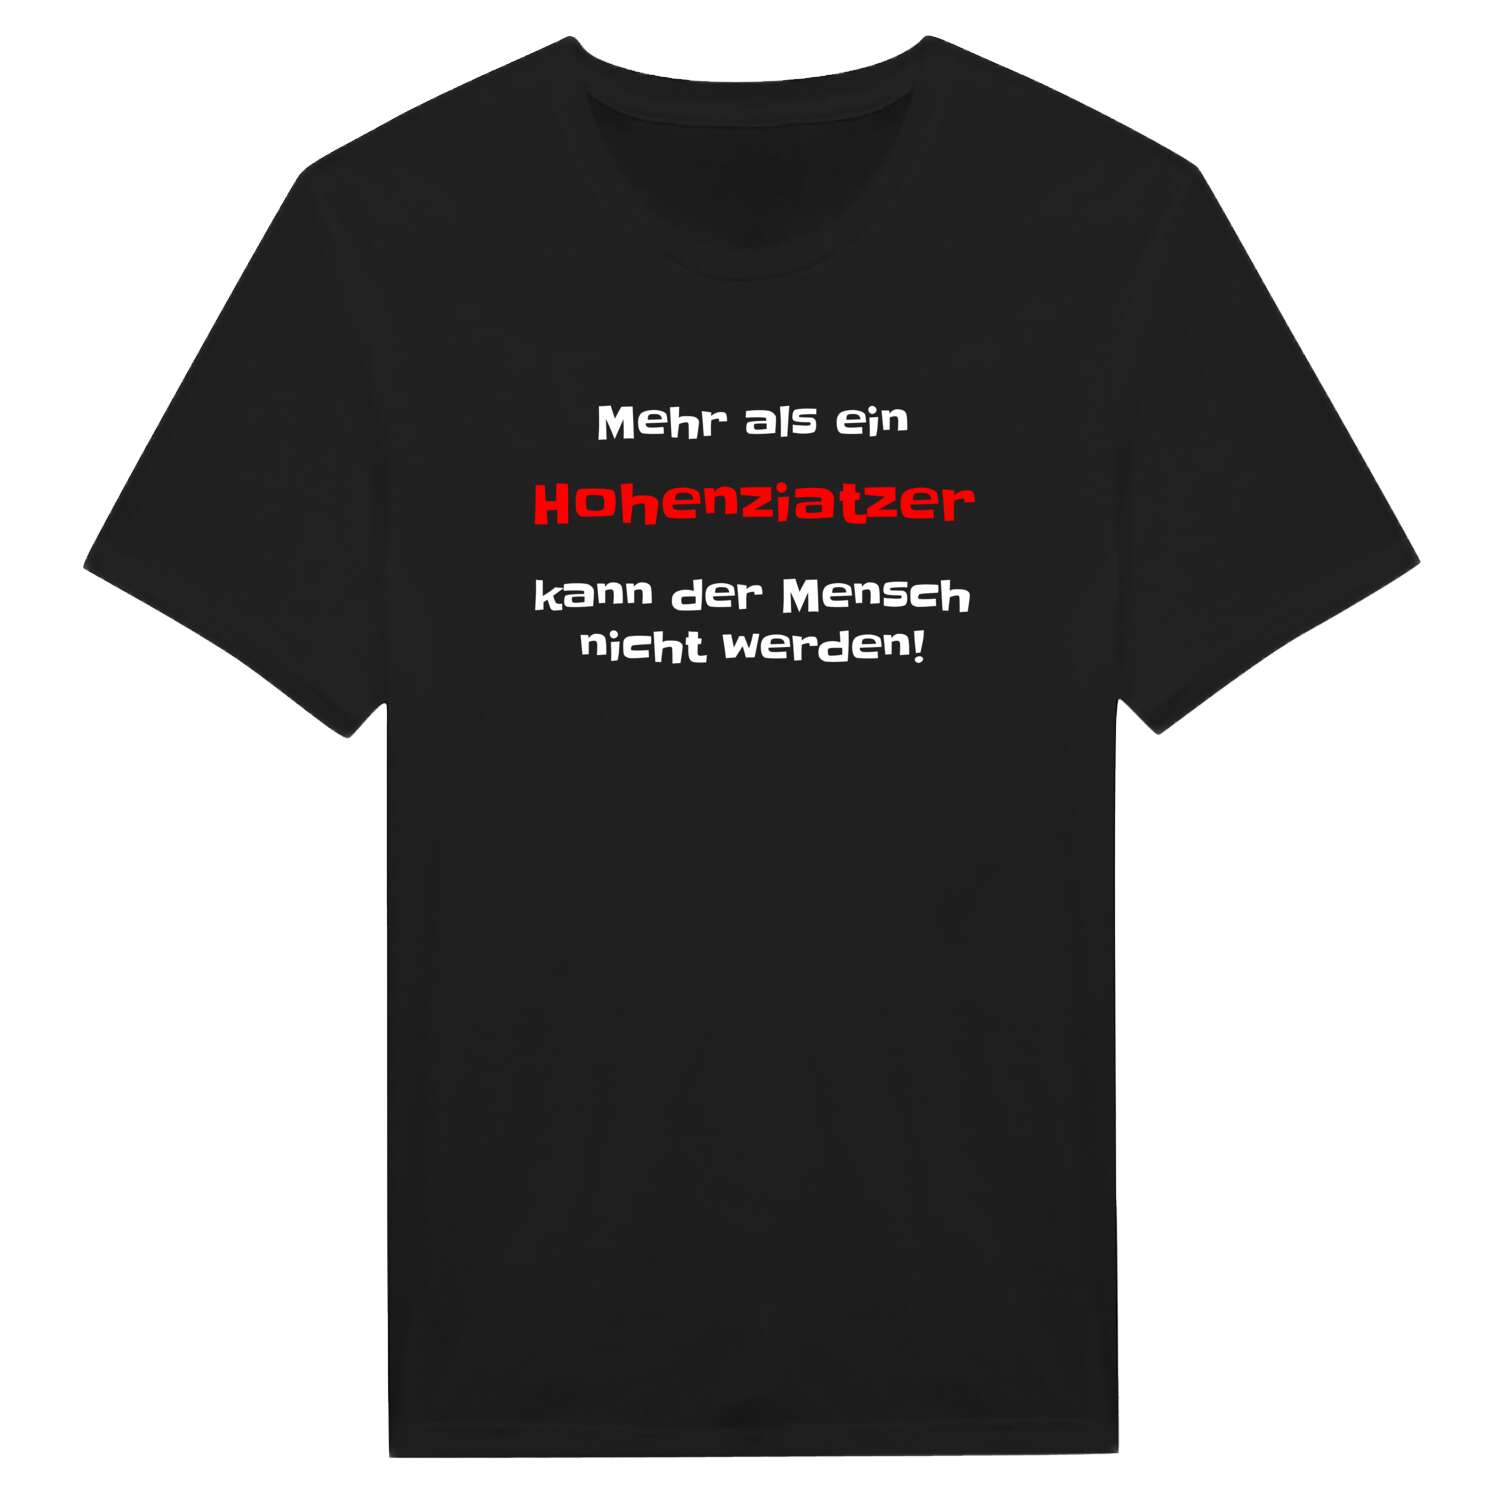 Hohenziatz T-Shirt »Mehr als ein«